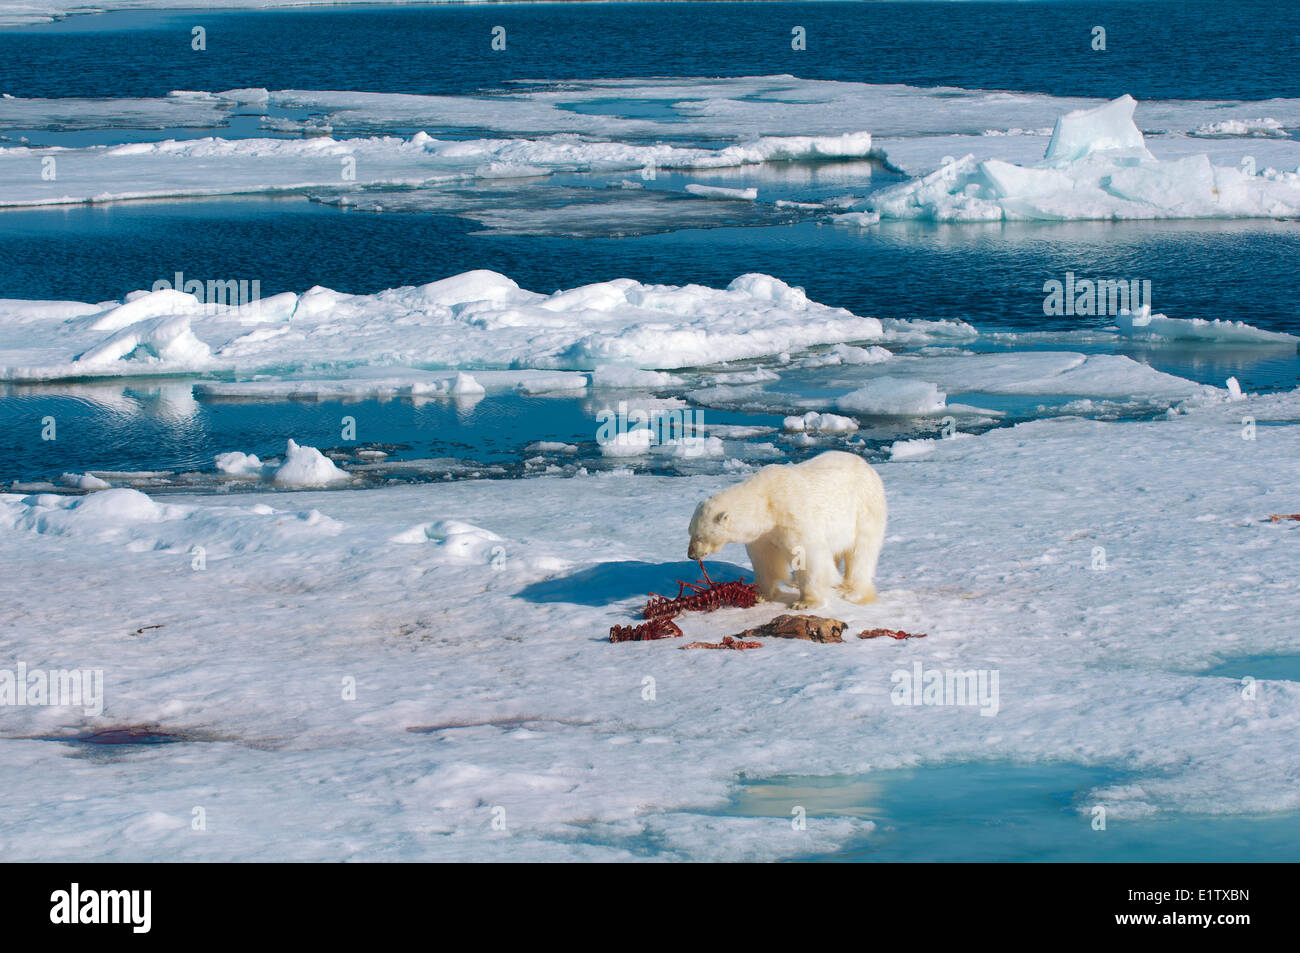 Adulto el oso polar (Ursus maritimus) se alimentan de los restos de un sello barbudo matar, Svalbard, Archipiélago Ártico noruego Foto de stock